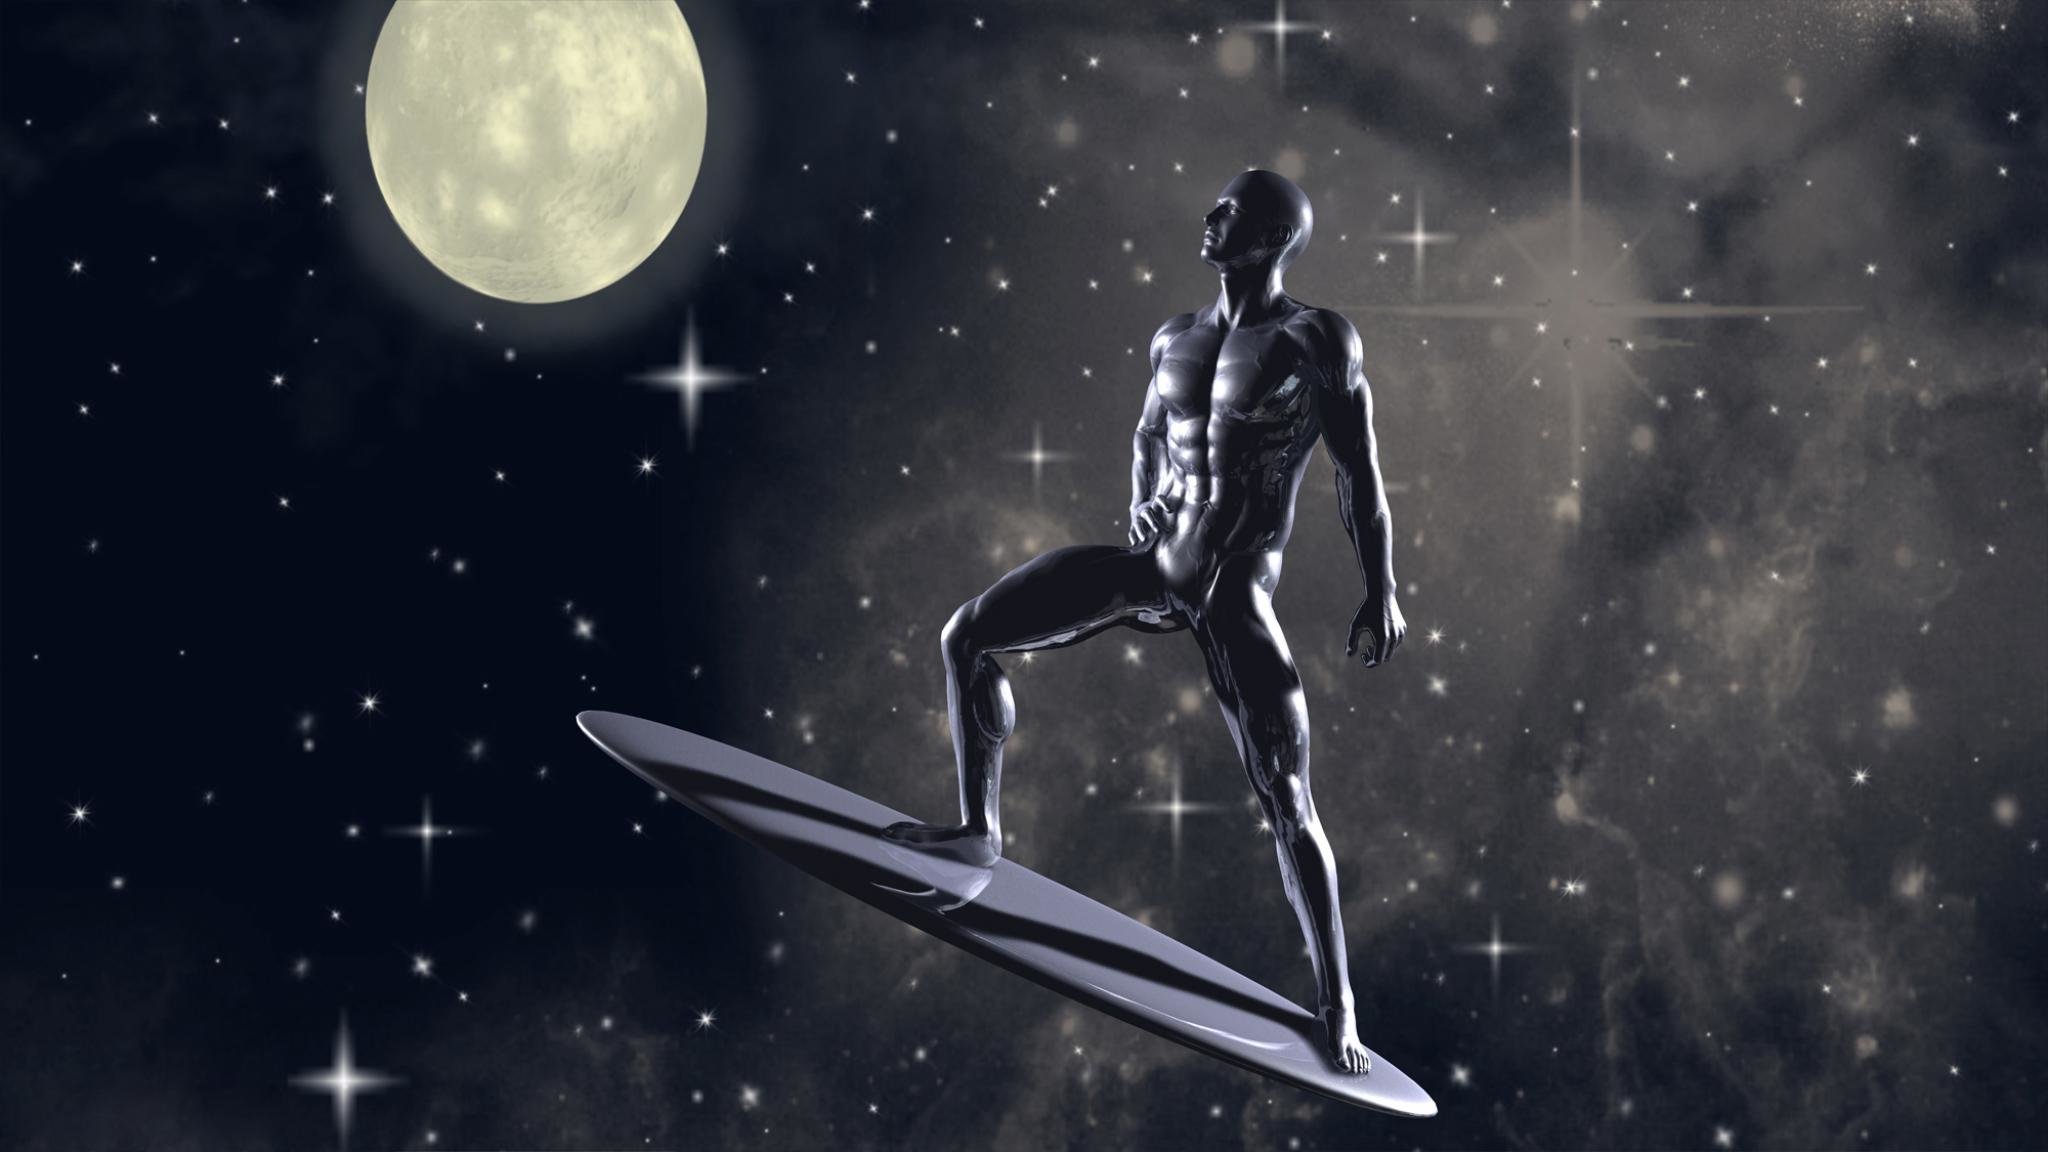 Free Download Silver Surfer Wallpaper Id165157 Hd 2048x1152